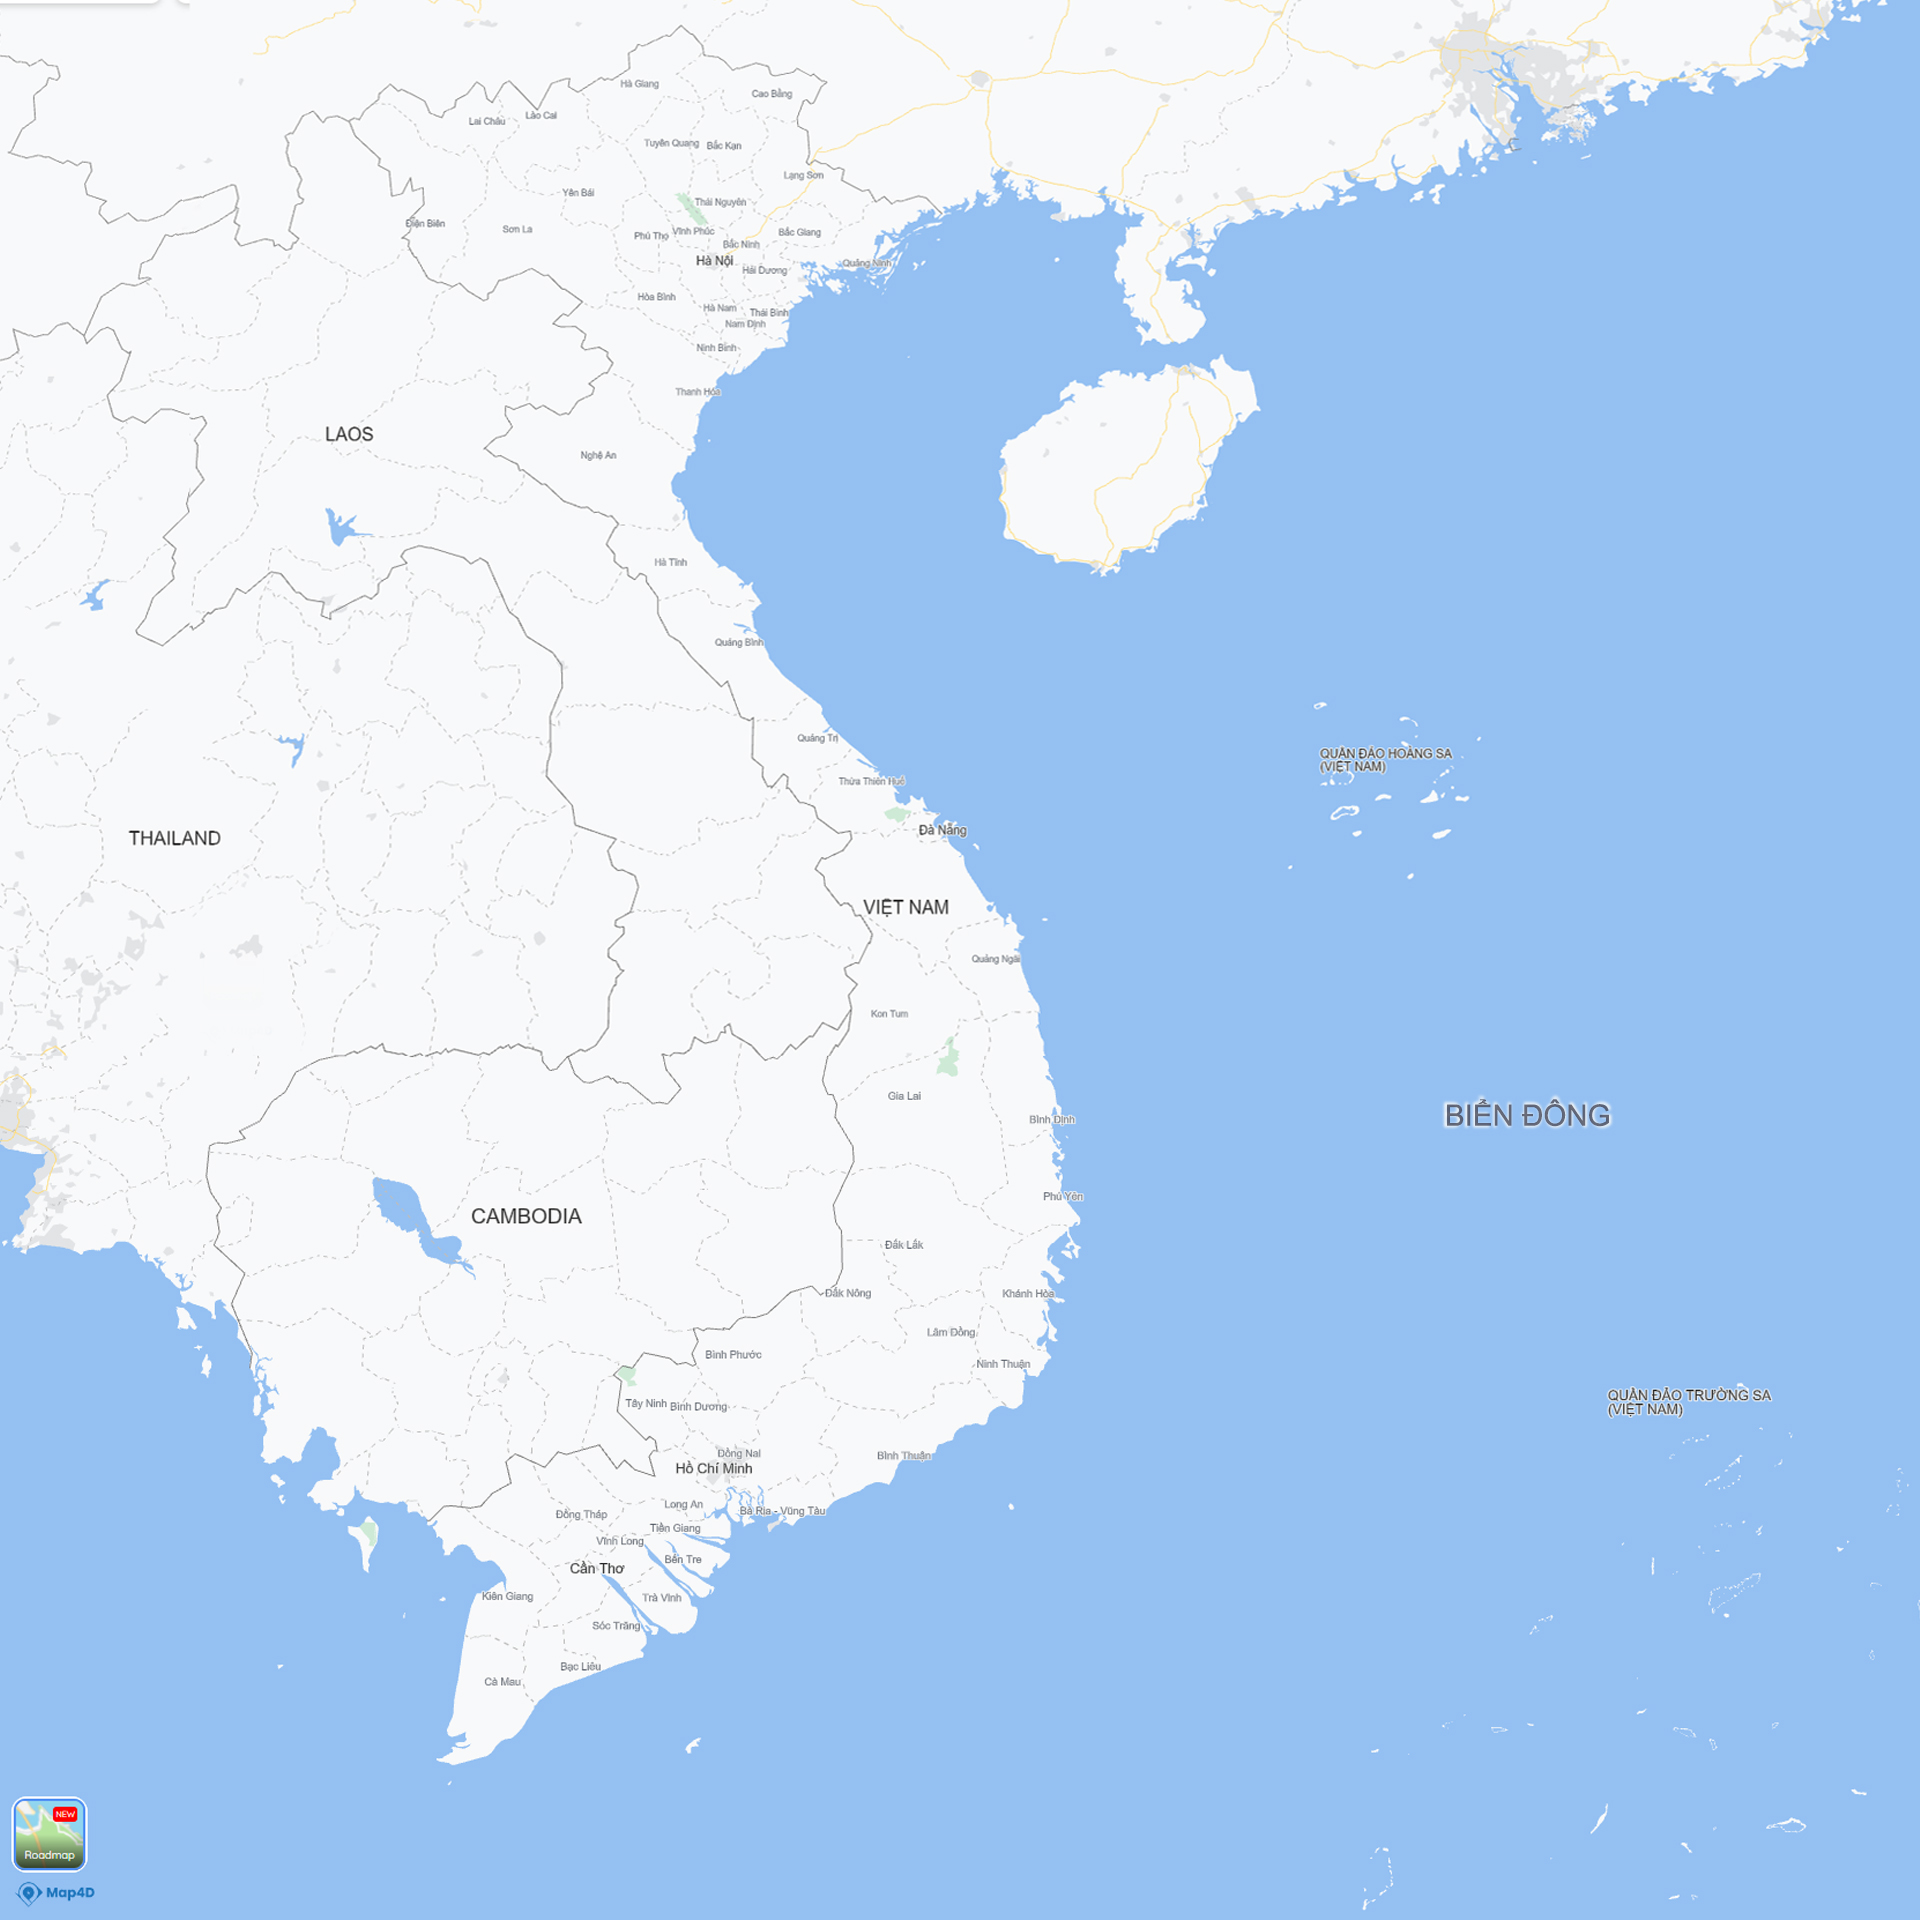 Map4D - Nền tảng bản đồ số hóa thể hiện chính xác và đầy đủ thông tin lãnh thổ và biển đảo Việt Nam